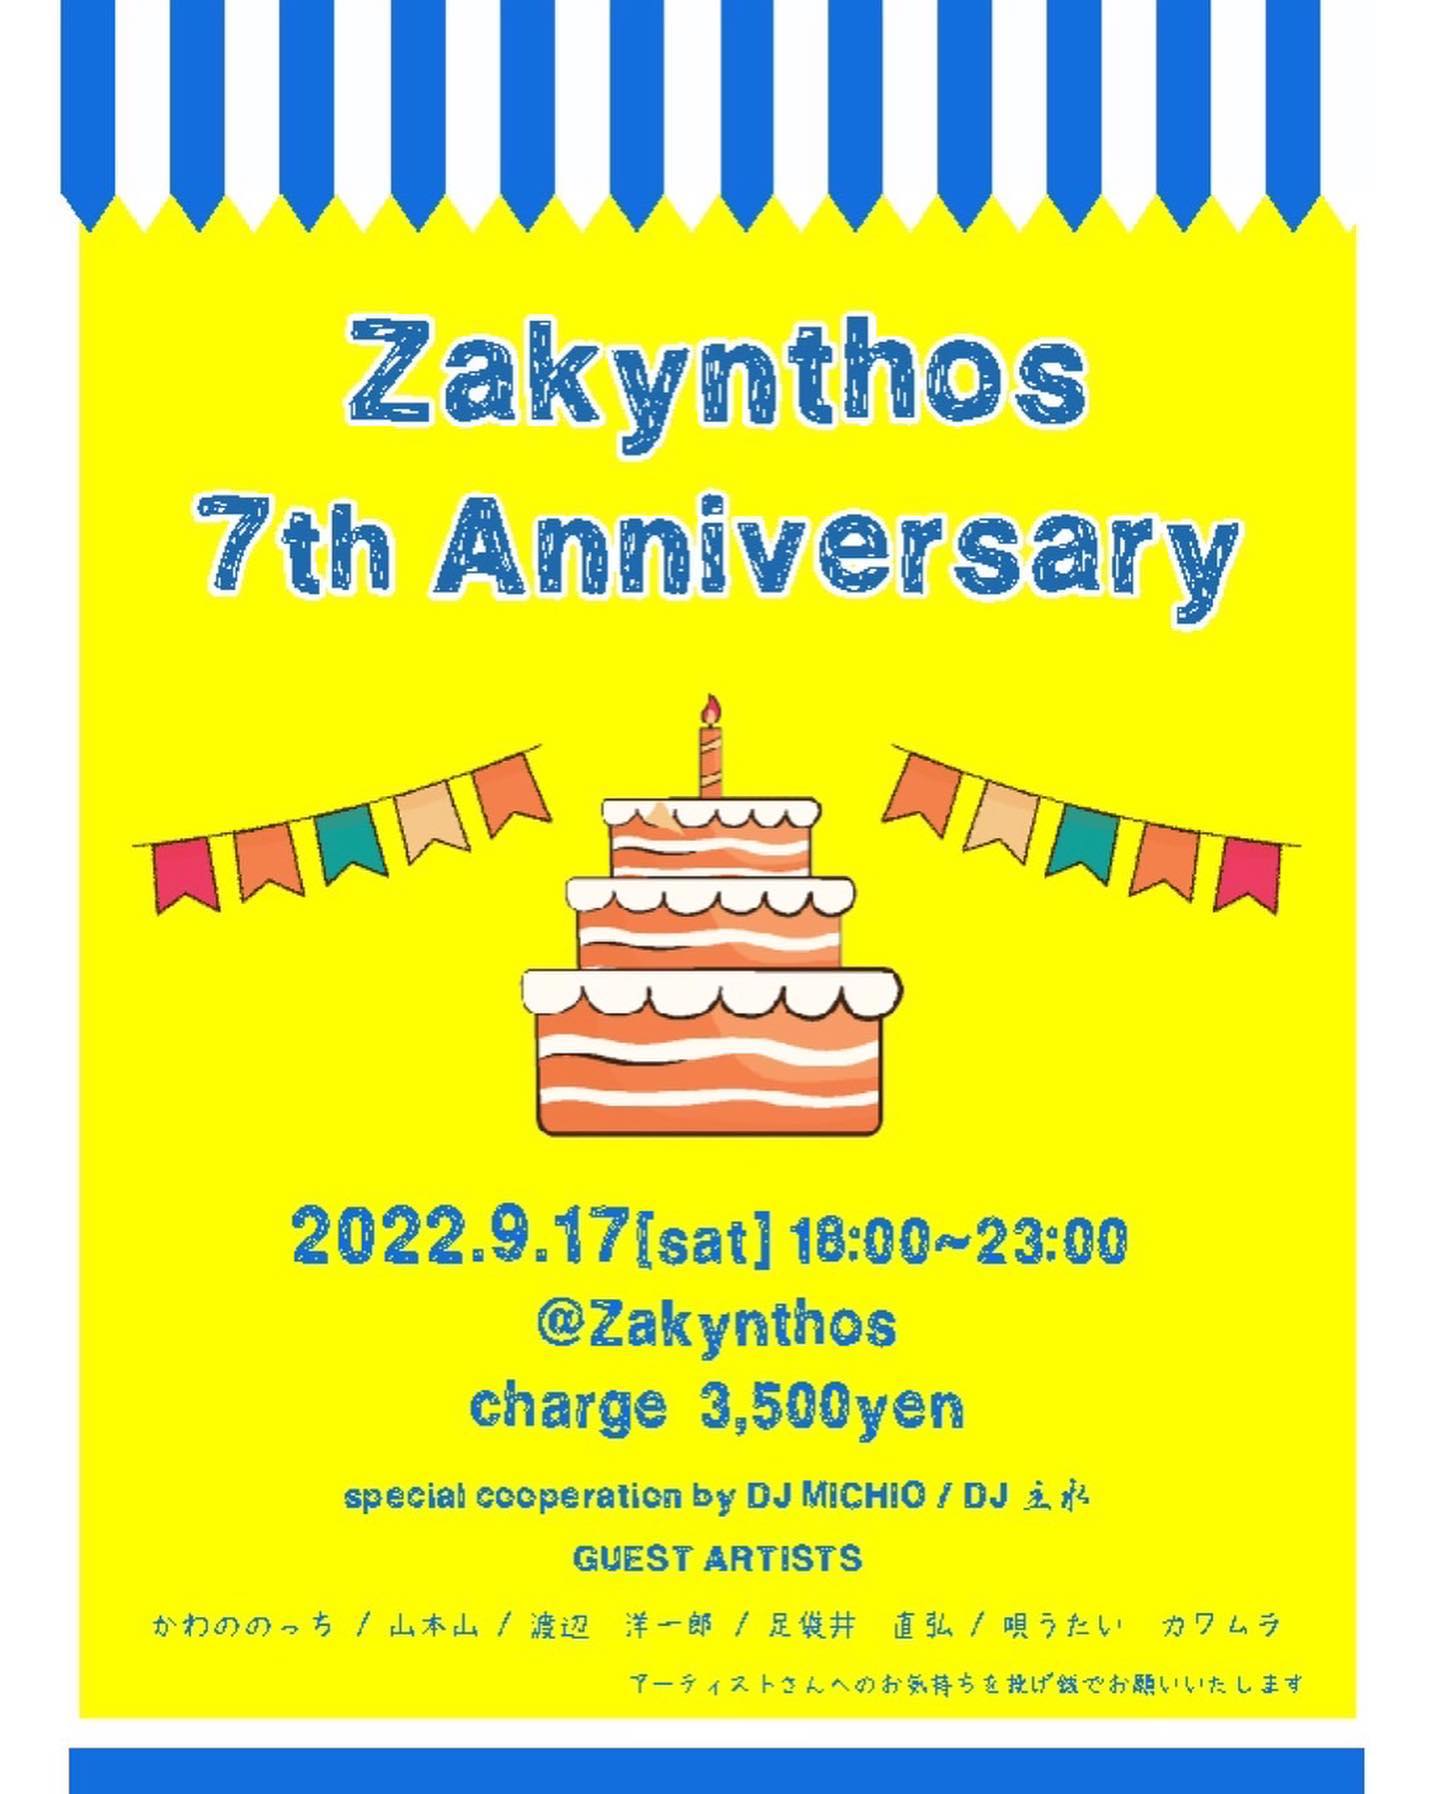 今年で7周年を迎えるZakynthosの周年イベントで歌います！Zakynthosお馴染みのパフォーマー&DJも出演参加します。2年ぶりの周年イベント！2年分のお祝いの気持ちを込めて歌います！よかったら遊びに来てください。みなさん、楽しみましょう♪